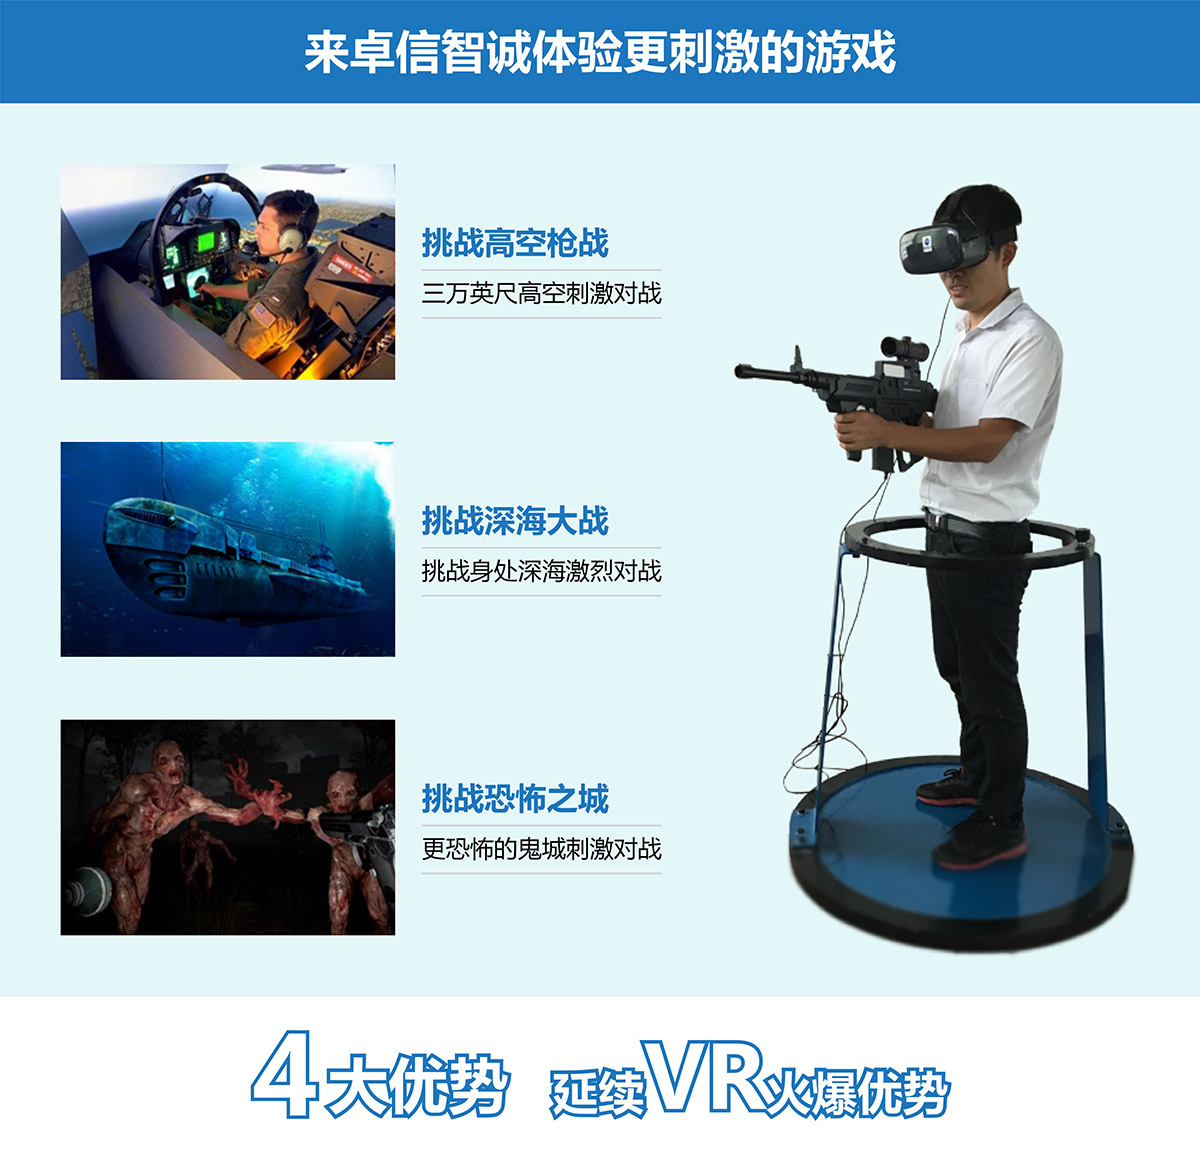 安全体验VR对战4大优势延续vr火爆优势.jpg